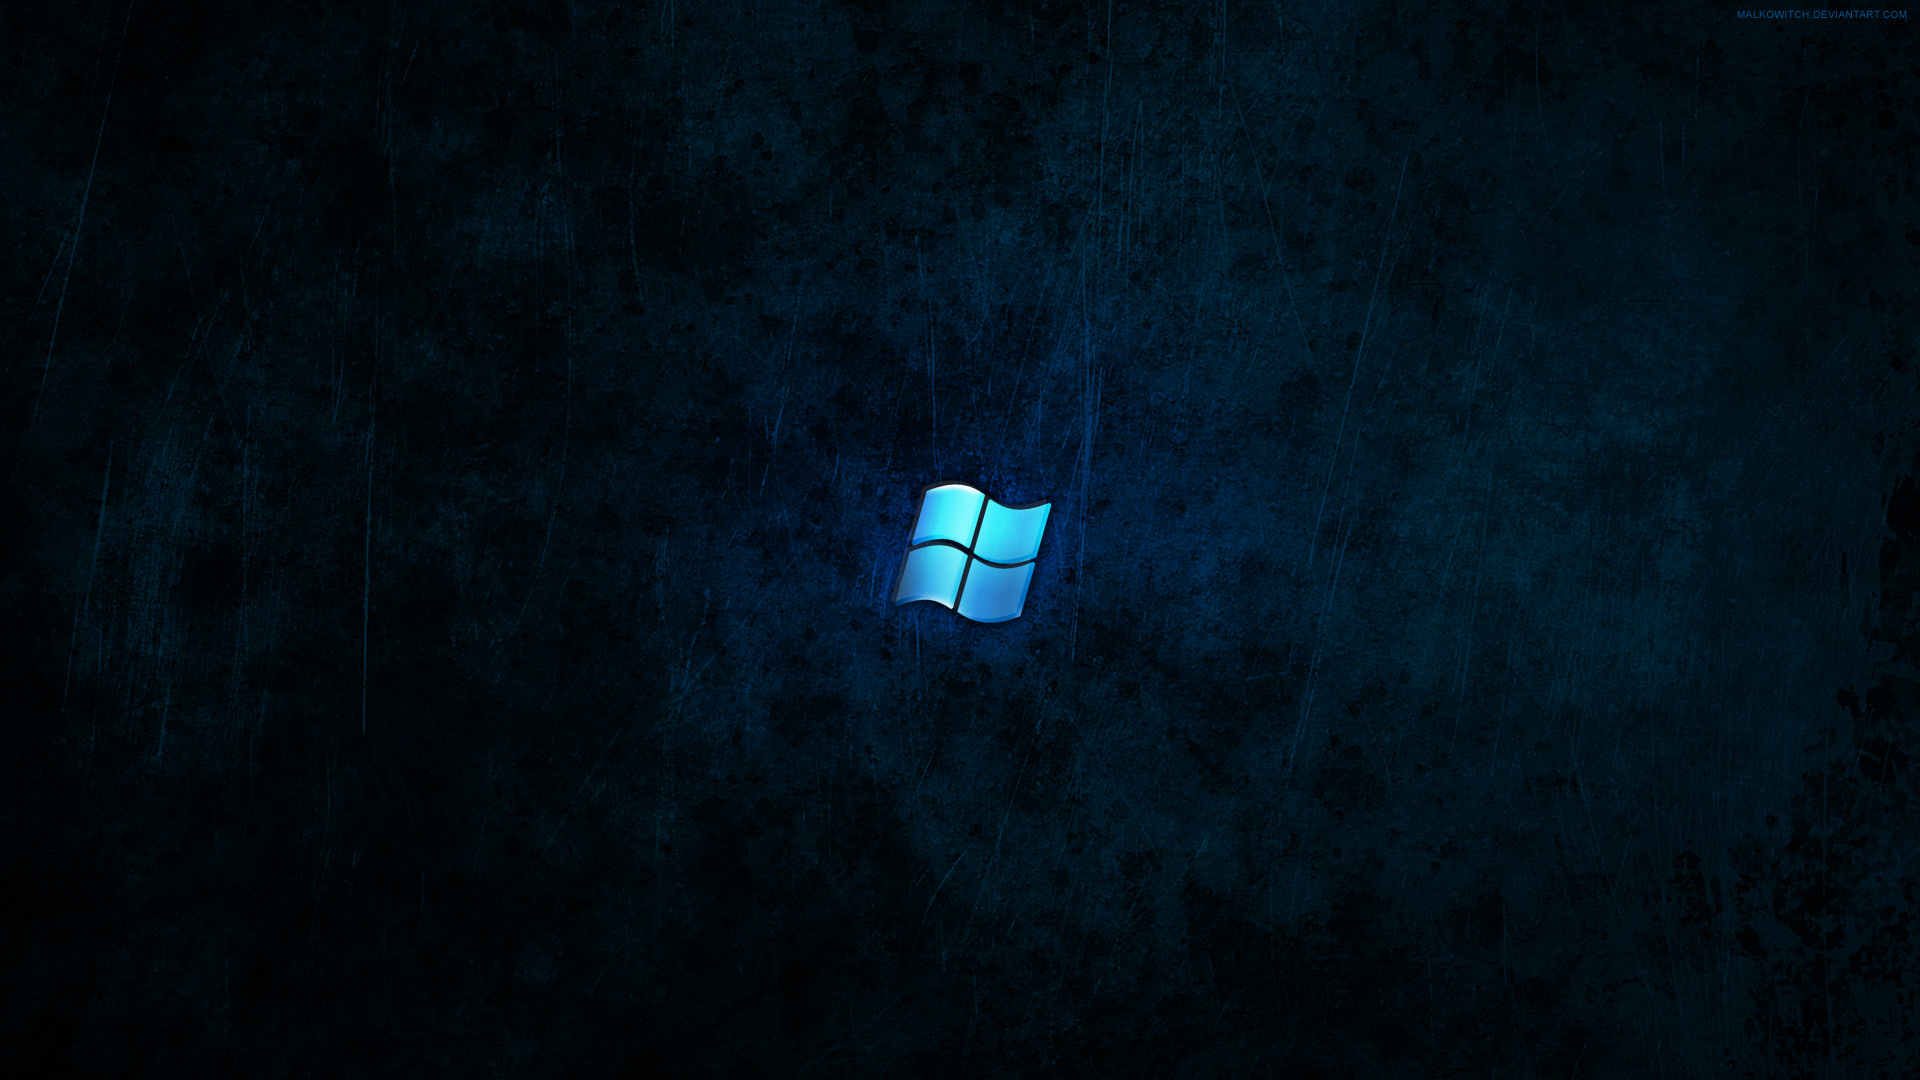 Hình nền Windows 7 tối: Màu đen luôn tạo ra vẻ đẹp độc đáo và mạnh mẽ, đặc biệt trên hình nền desktop. Với Windows Dark Wallpaper, bạn sẽ được đắm chìm trong không gian tối mộc mạc và lãng mạn. Hãy xem các bức ảnh liên quan để trải nghiệm trực tiếp sự bí ẩn và quyền lực của màu sắc tối giản này.